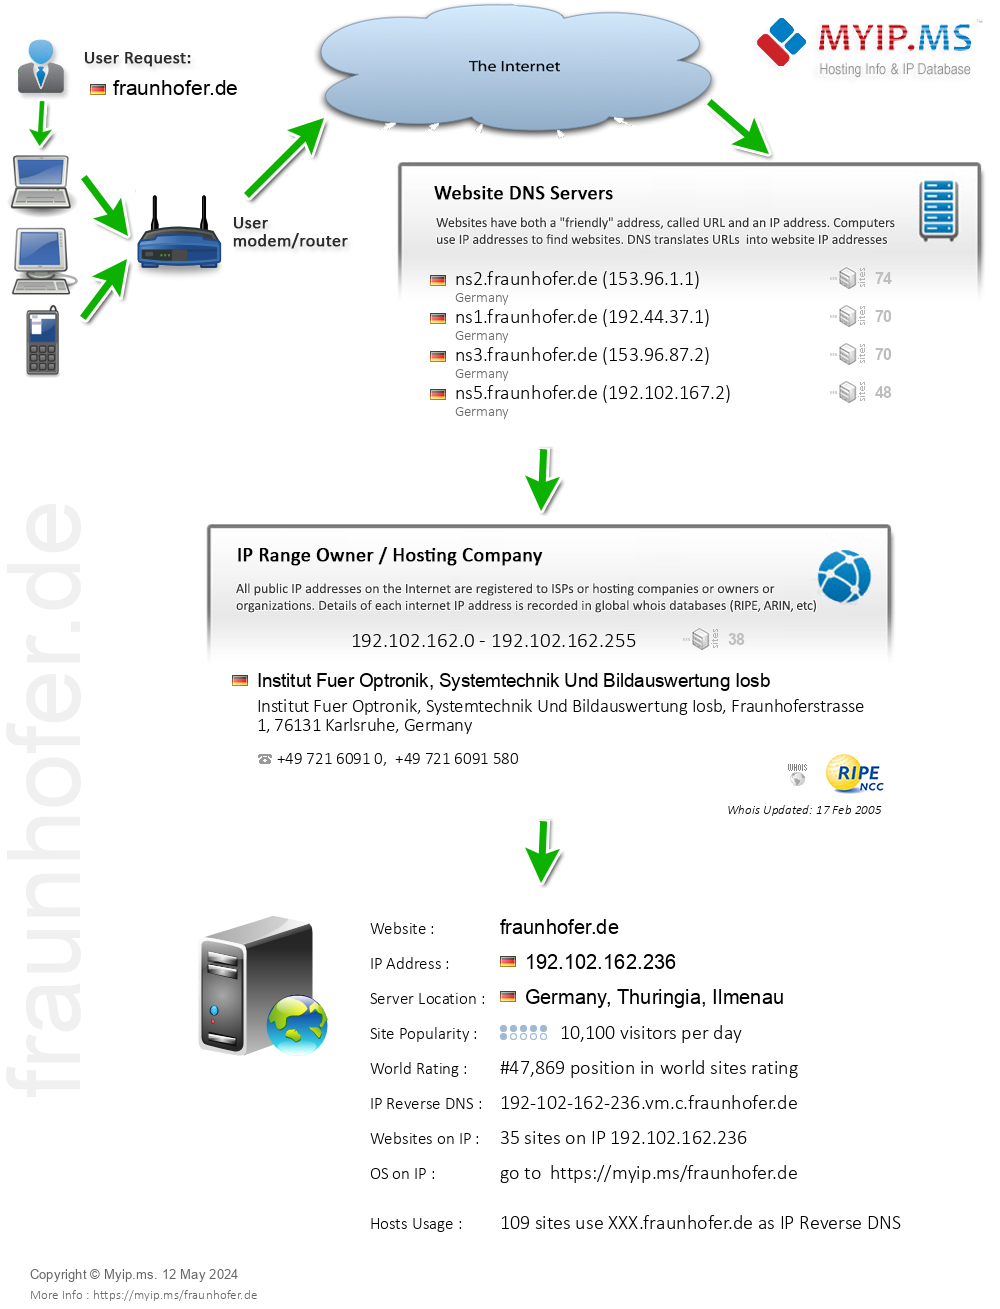 Fraunhofer.de - Website Hosting Visual IP Diagram